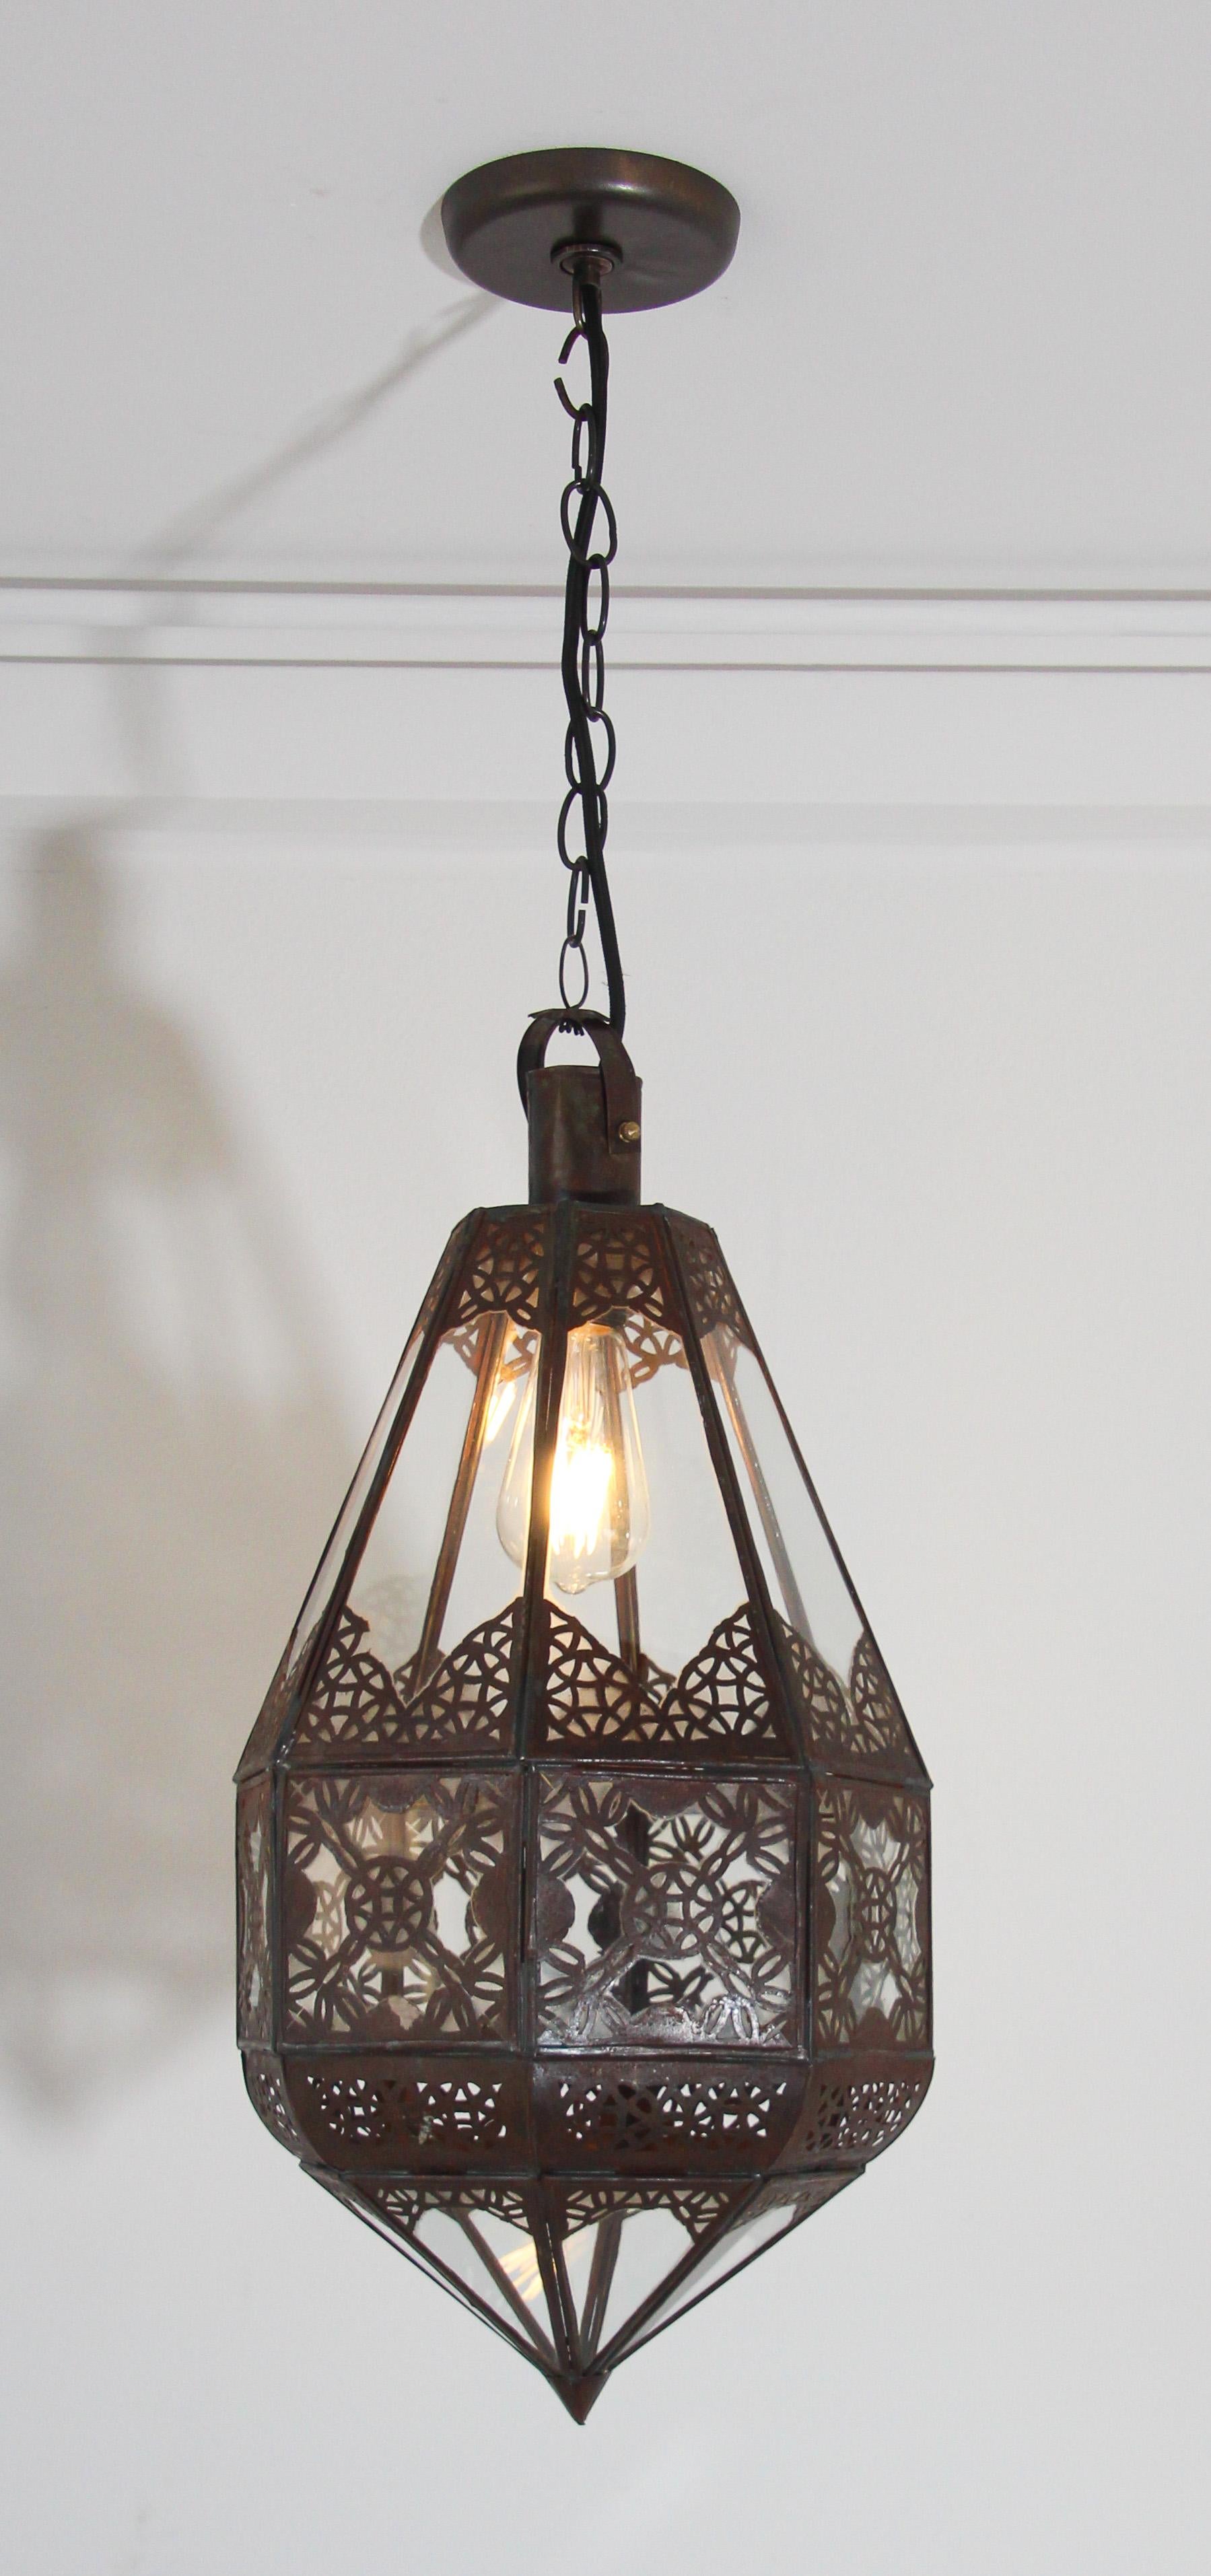 Lanterne marocaine en verre transparent, fabriquée à la main.
Métal finition bronze antique rouillé avec motif ajouré en filigrane mauresque.
Lanterne marocaine fabriquée à la main par des artisans de Marrakech, Maroc, Afrique du Nord.
Dimensions :